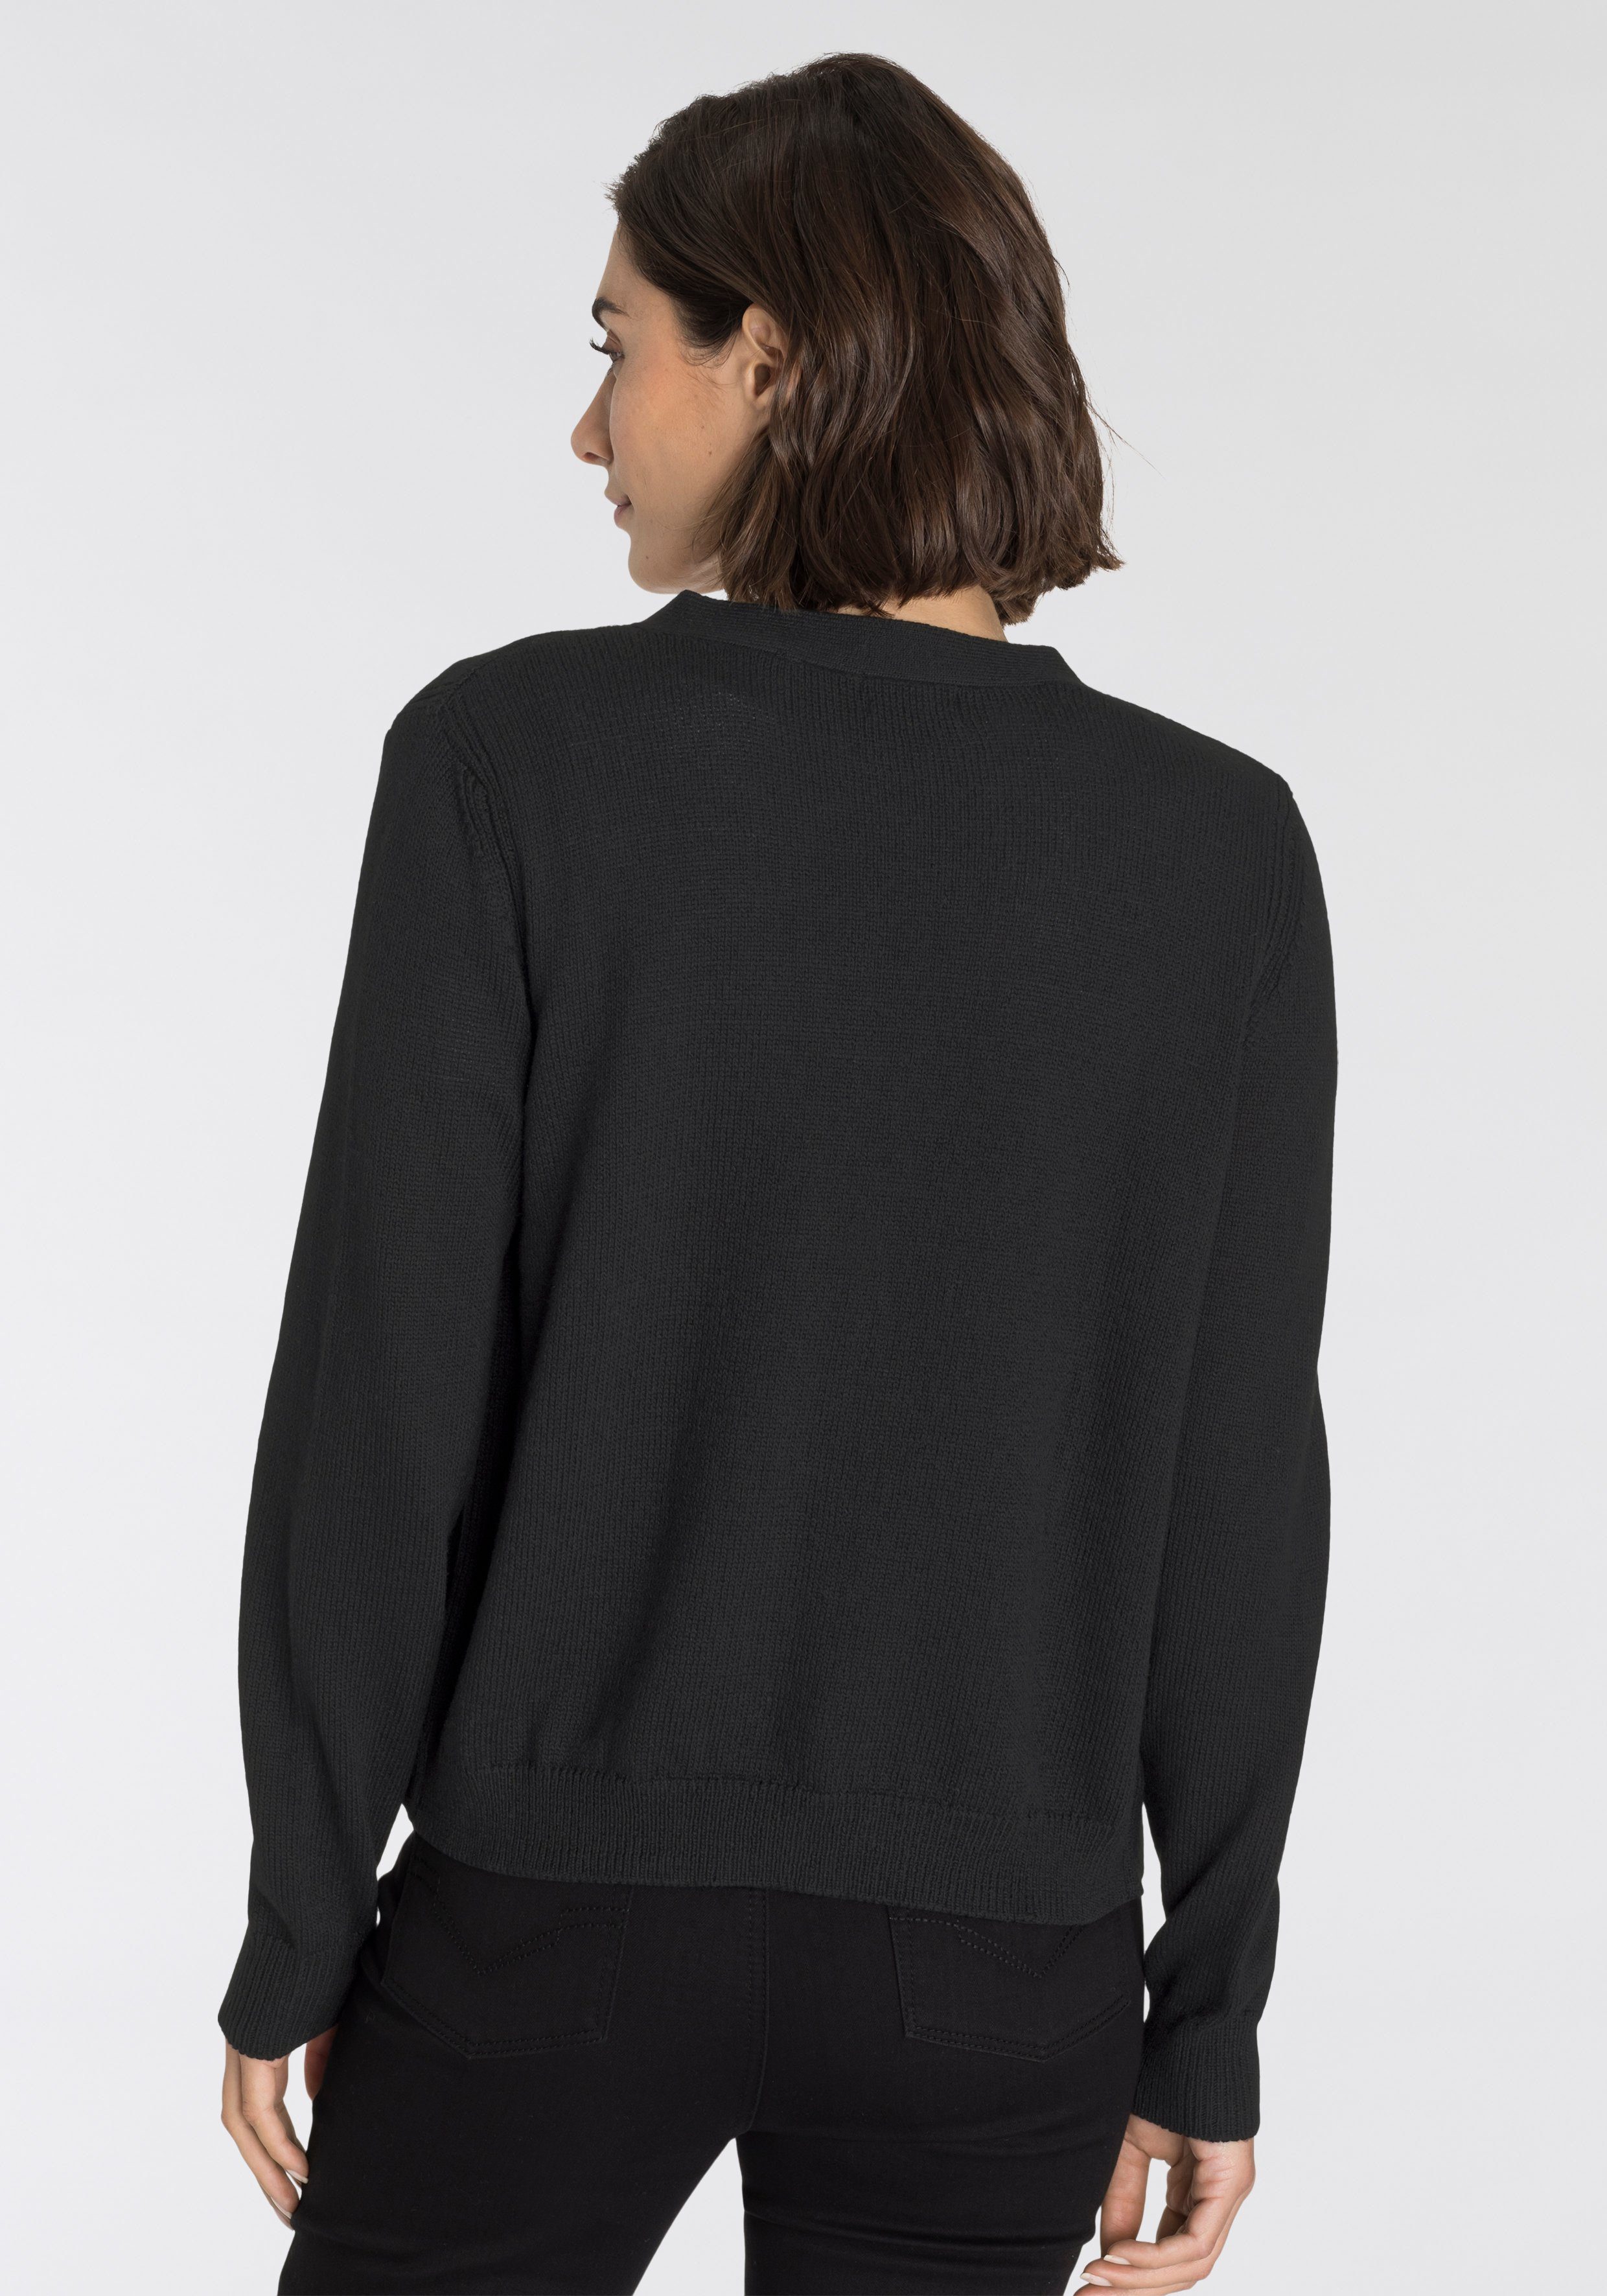 Damen Jacken OTTO products Strickjacke CARDIGAN nachhaltig aus recycelter Polyester-Strickqualität - NEUE KOLLEKTION